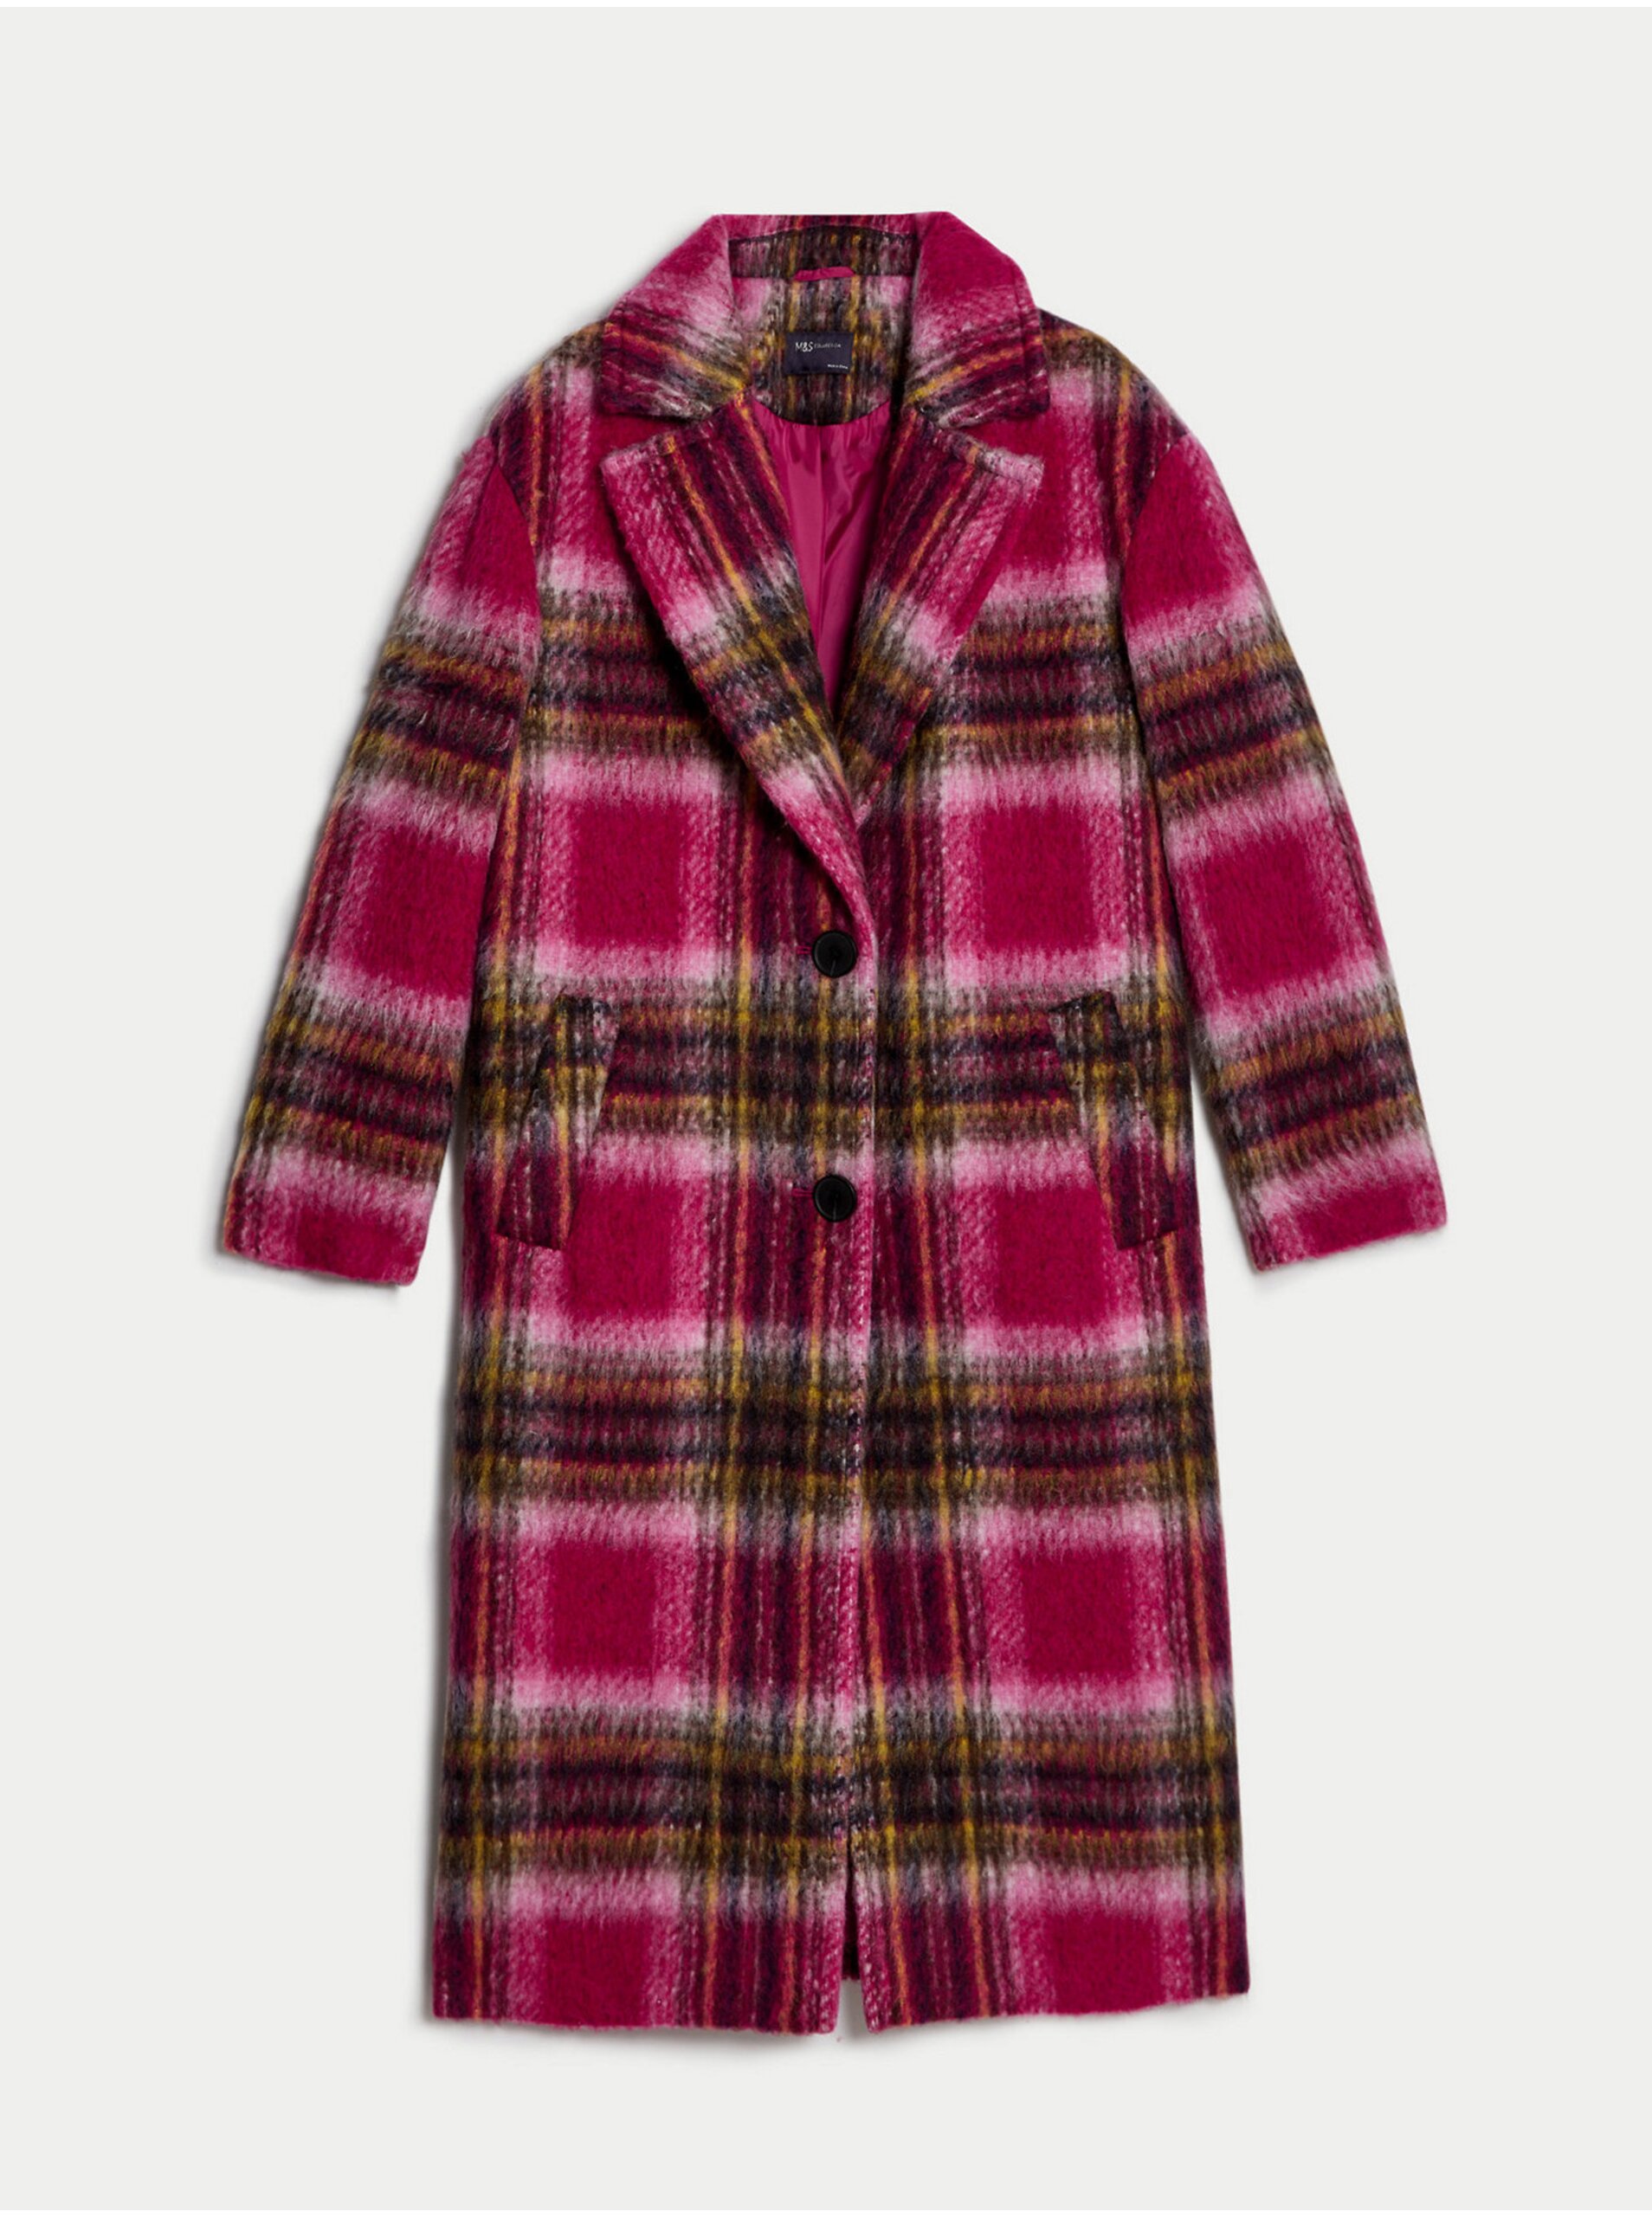 E-shop Tmavě růžový dámský kostkovaný kabát s příměsí vlny Marks & Spencer